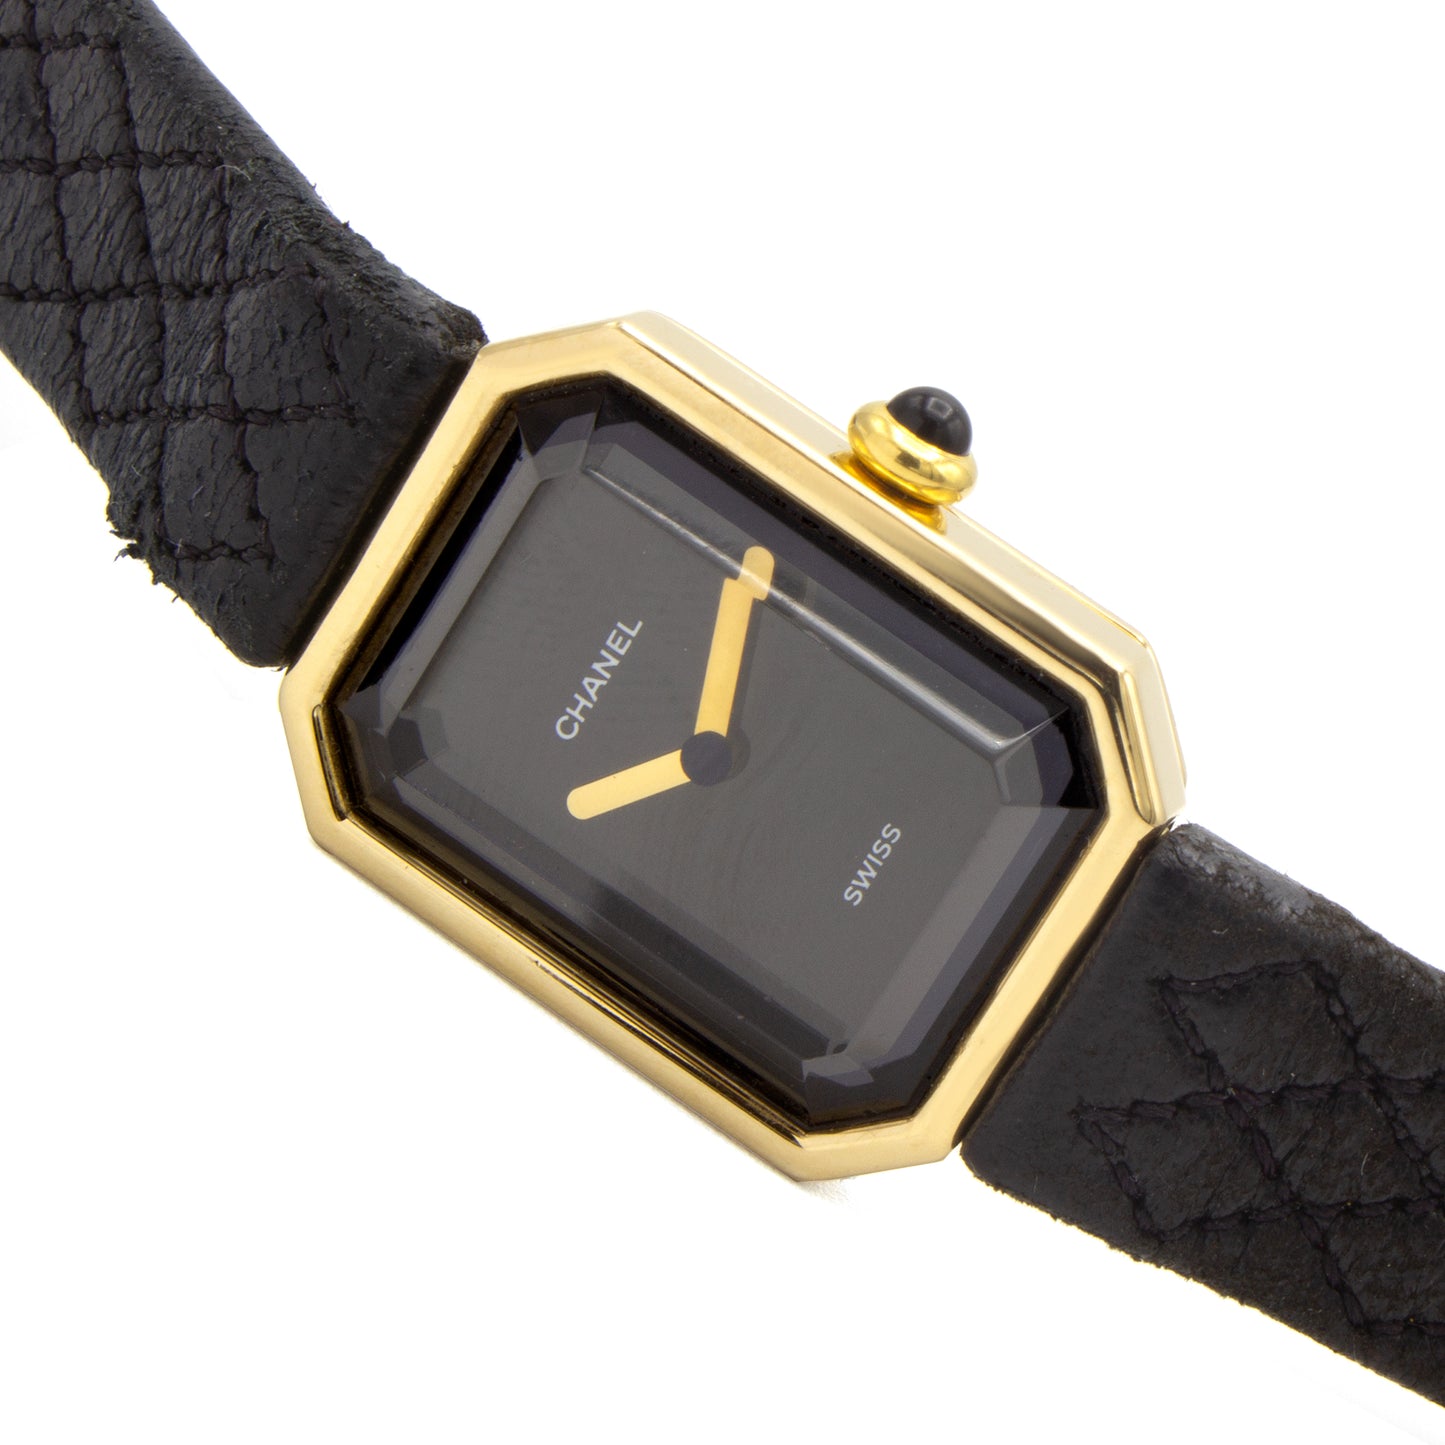 Chanel Première 18K watch